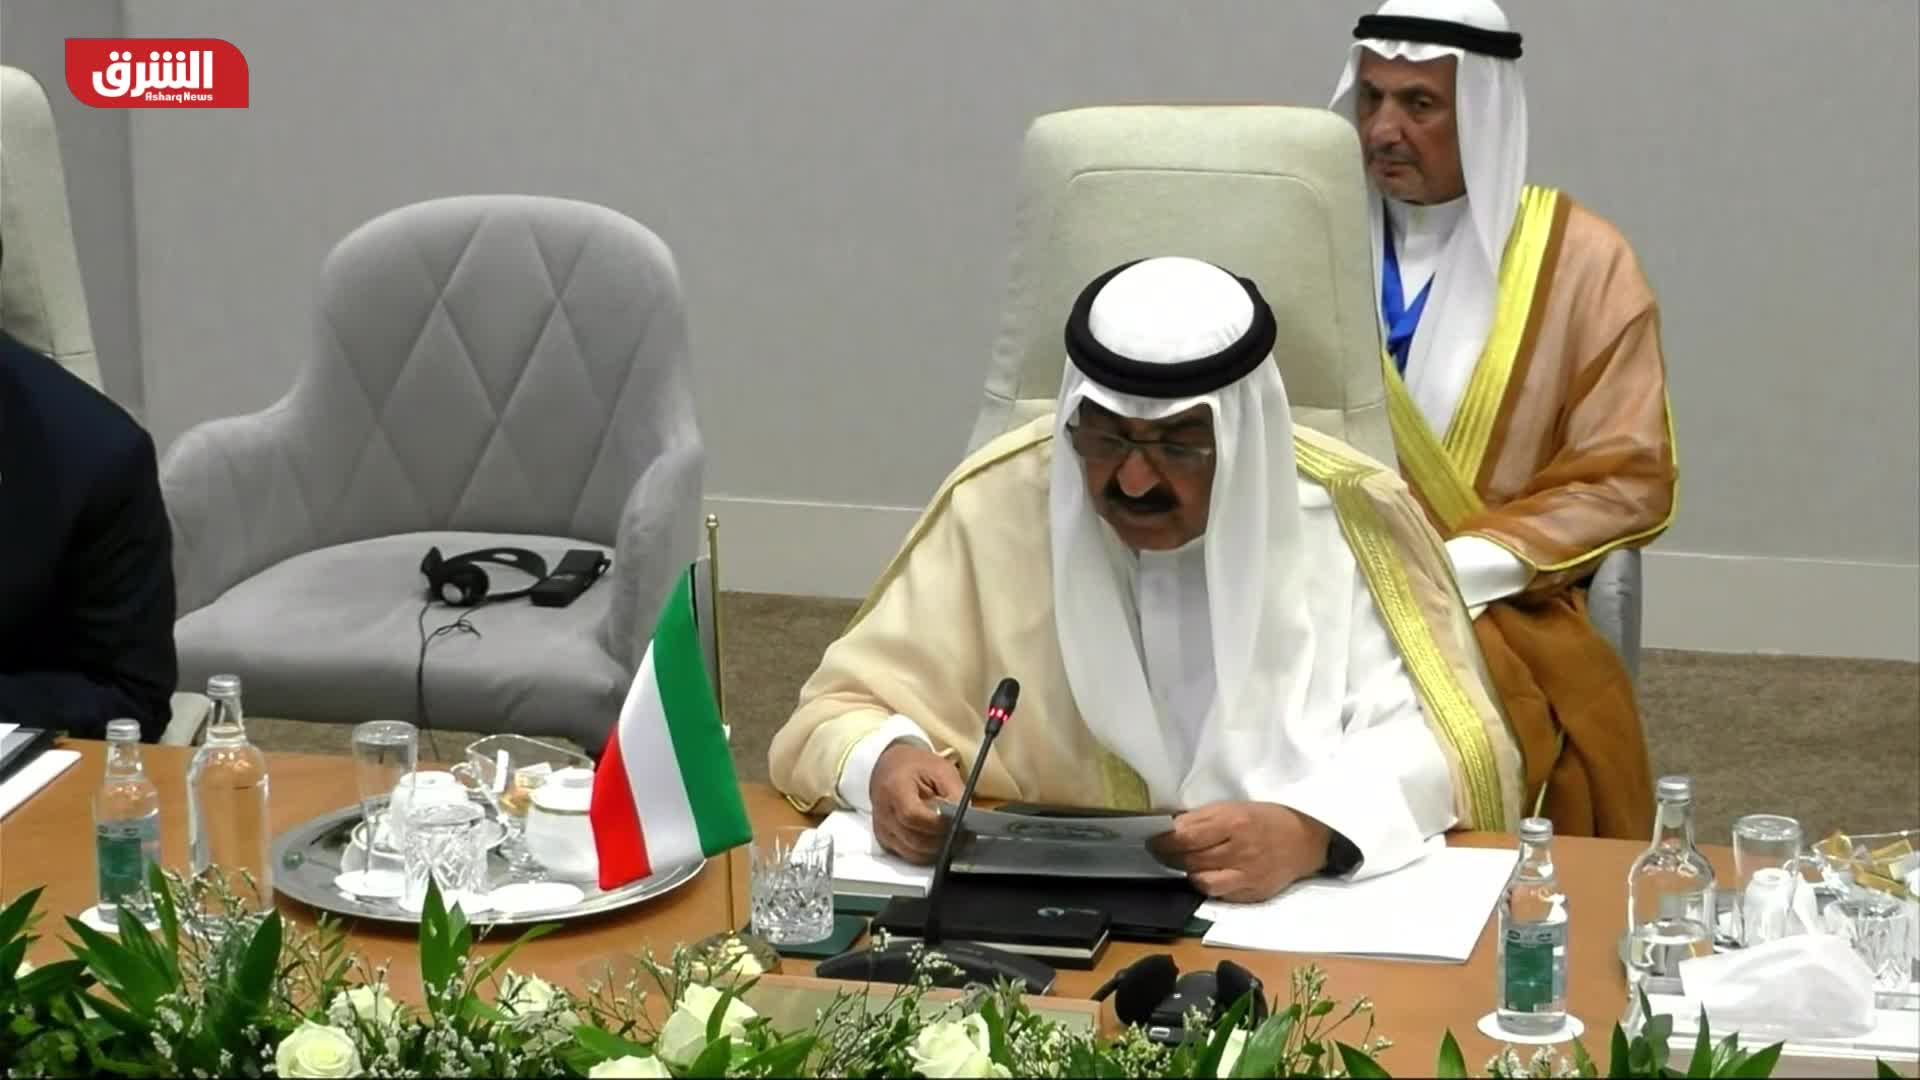 ولي عهد الكويت: مبادرة الشرق الأوسط الأخضر نقطة تحول مهمة في العمل المناخي